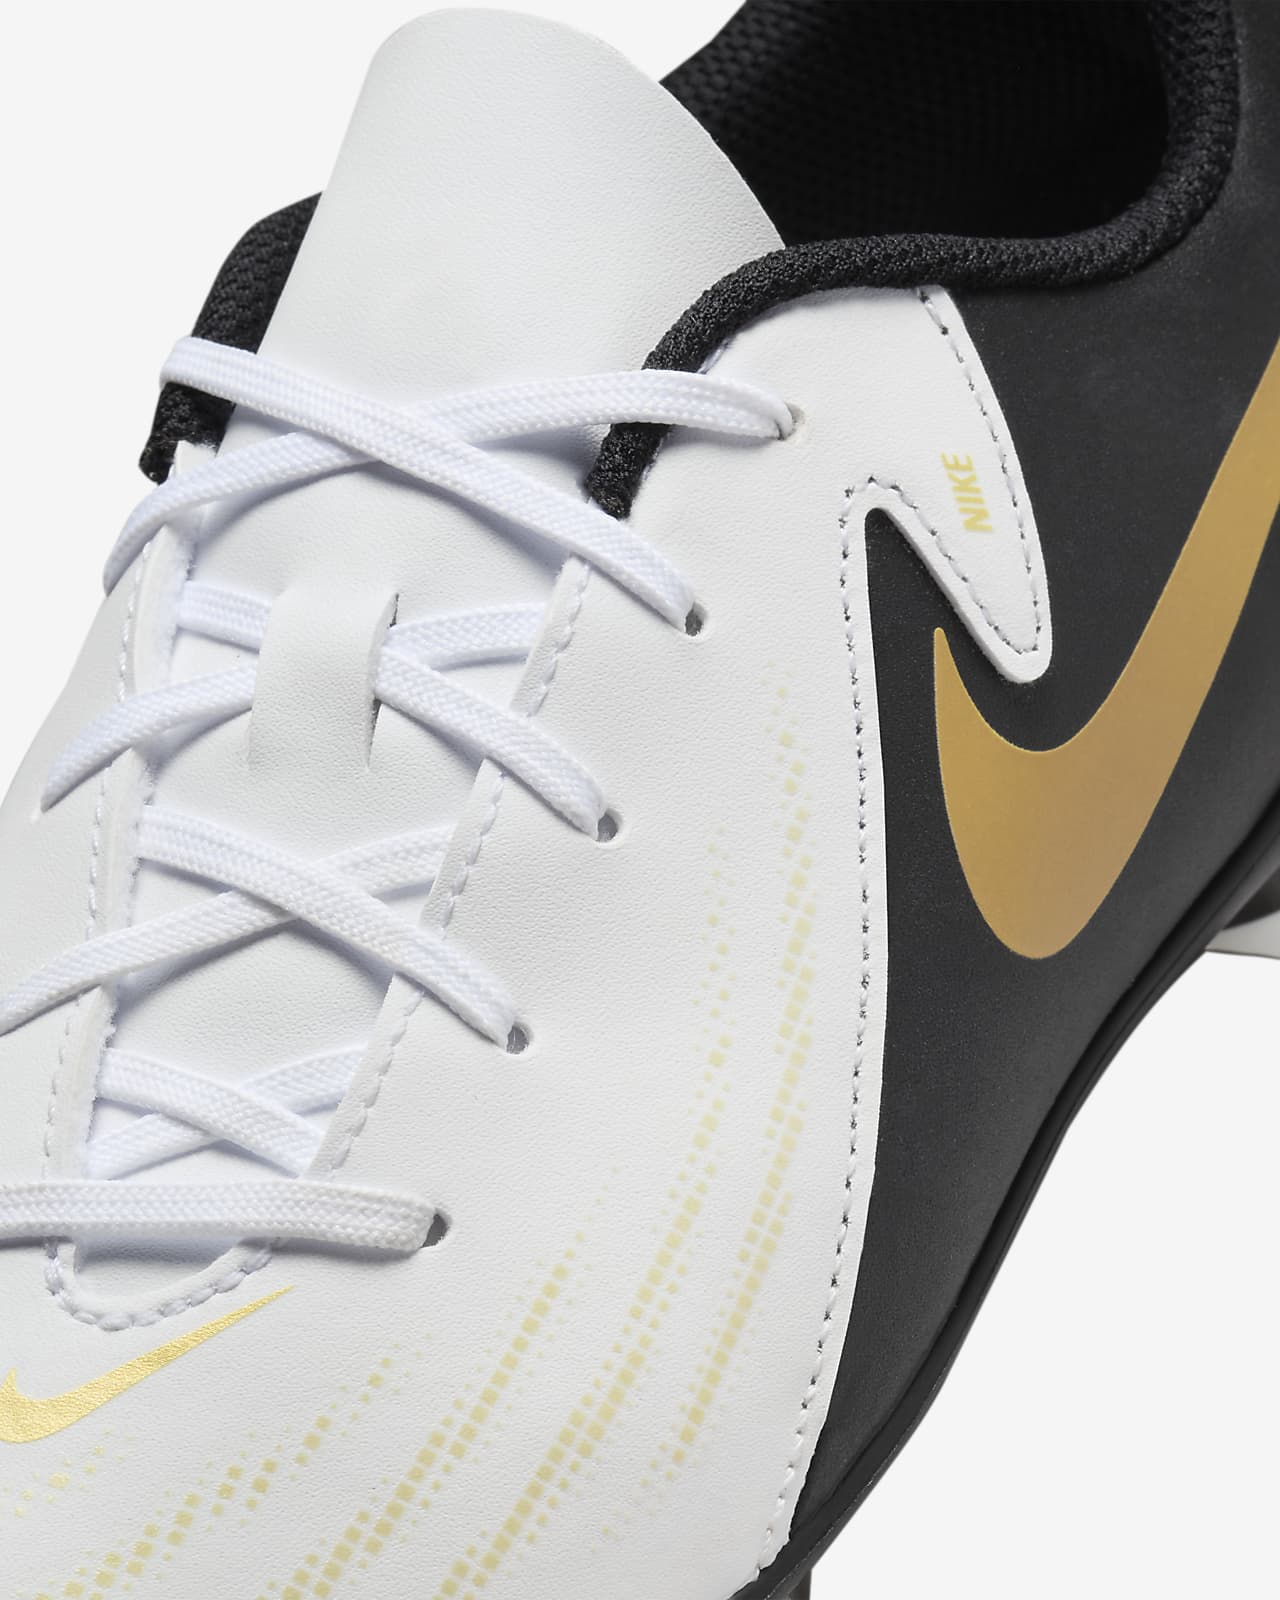 Nike NSW Metallic GX Leggings with Gold Nike and Swoosh Logos - Size Small